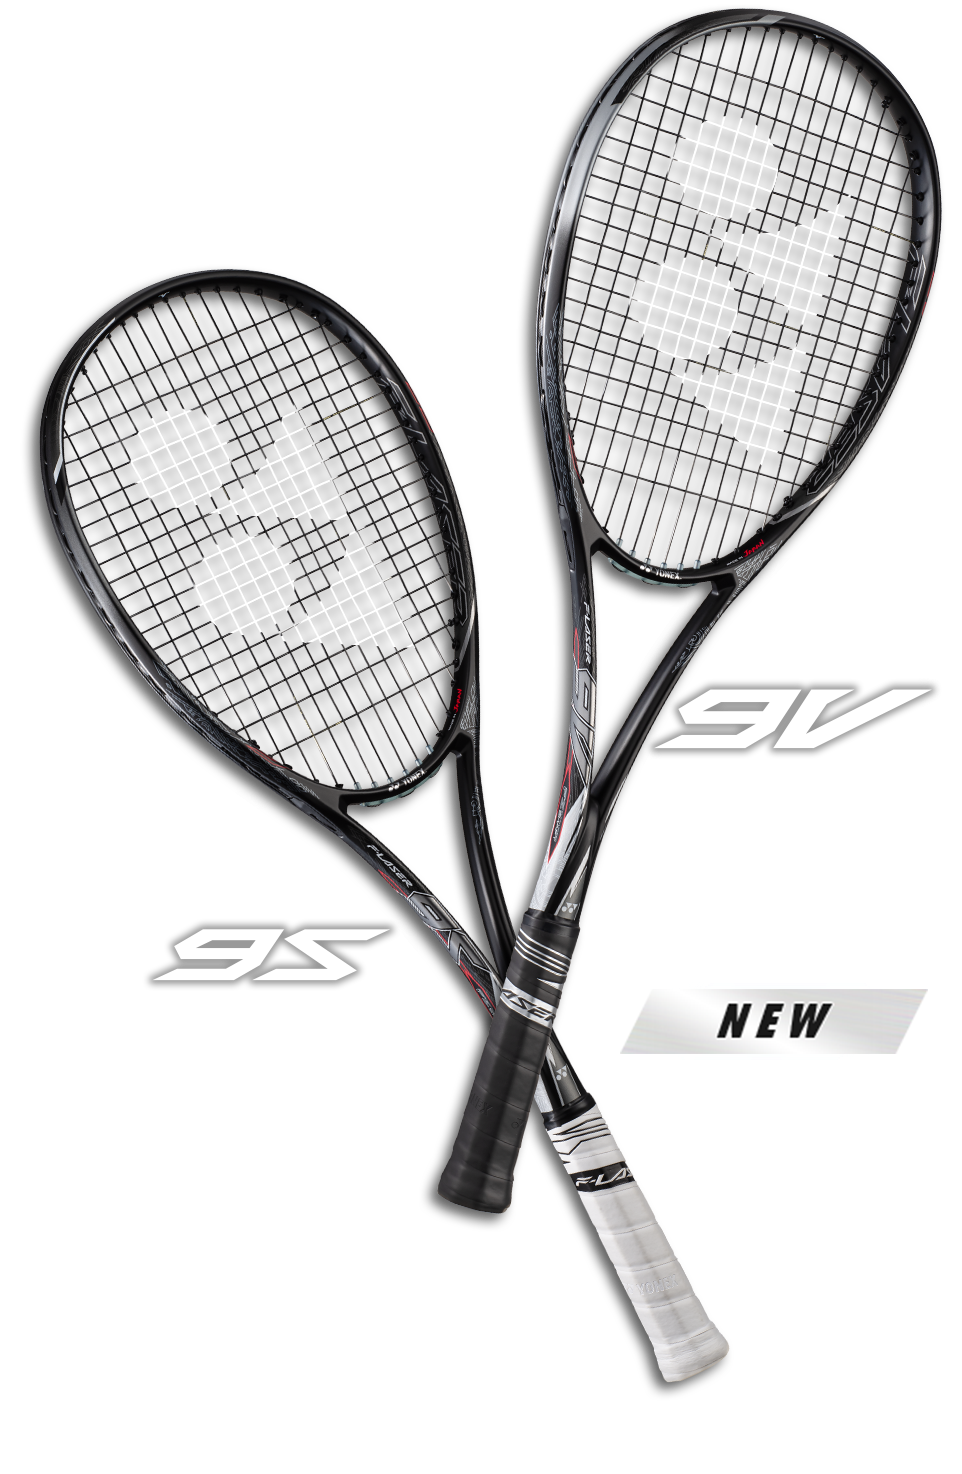 エフレーザー 9s F-LASER ソフトテニス ラケット ヨネックス 軟式 - テニス